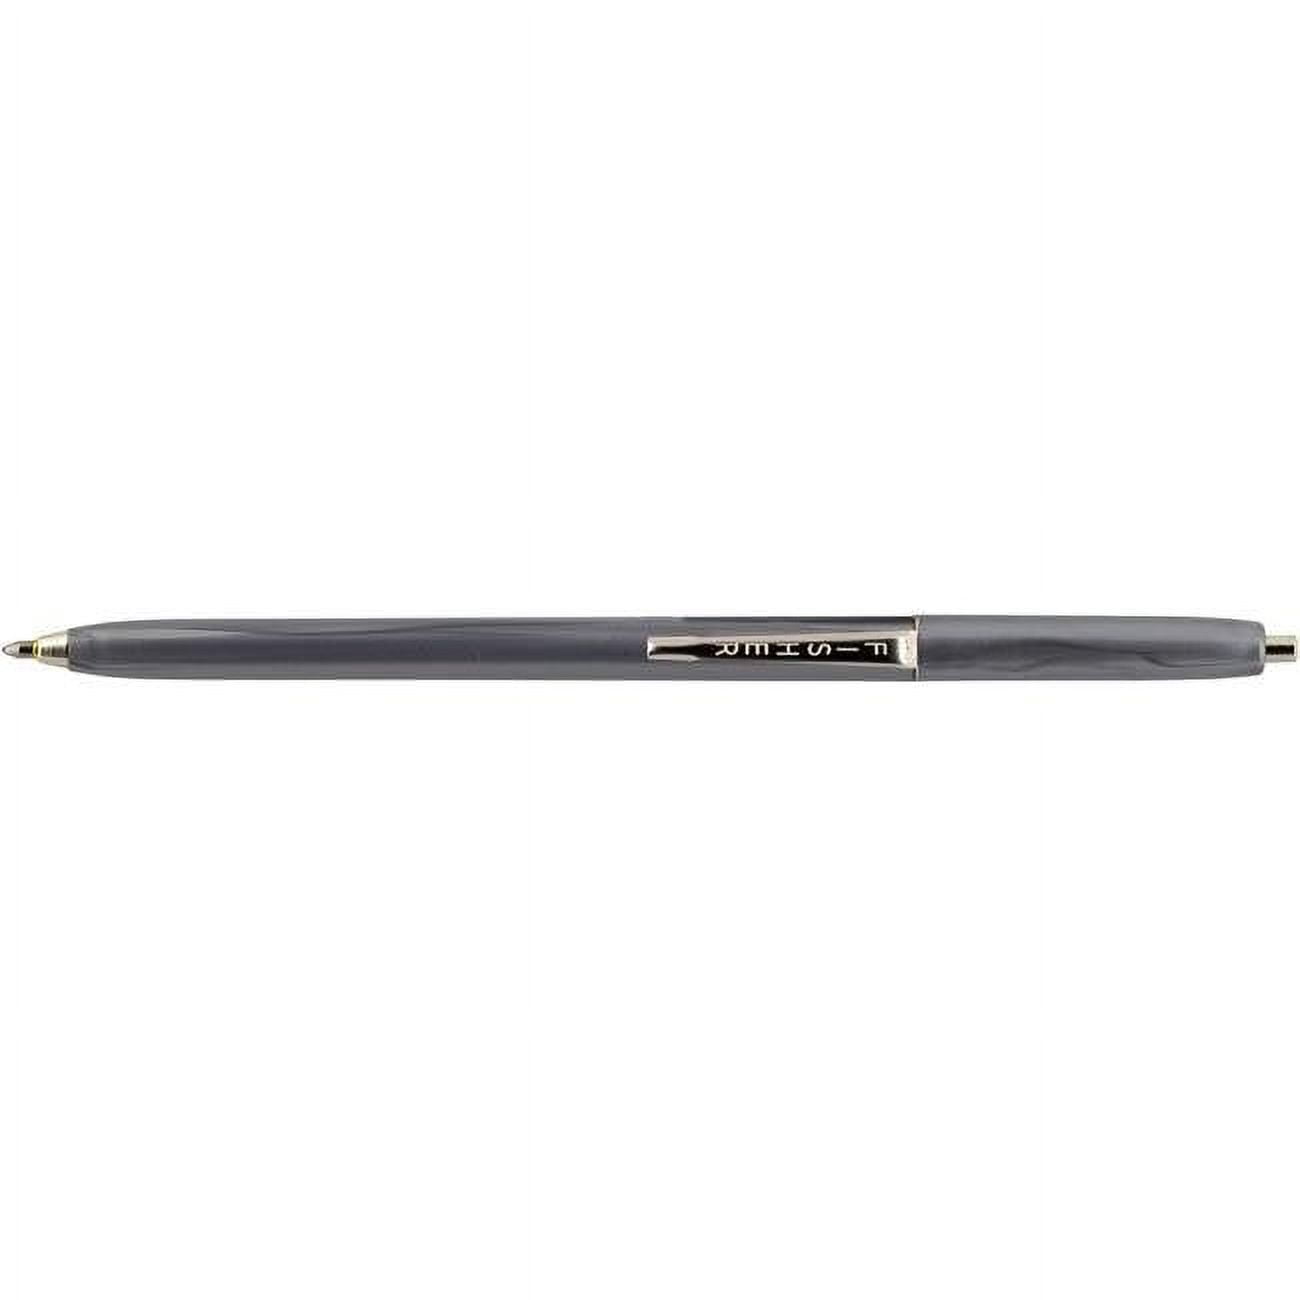 Sakura Pen Touch Paint Marker, Silver Extra Fine 41102art Craft Pen Maker